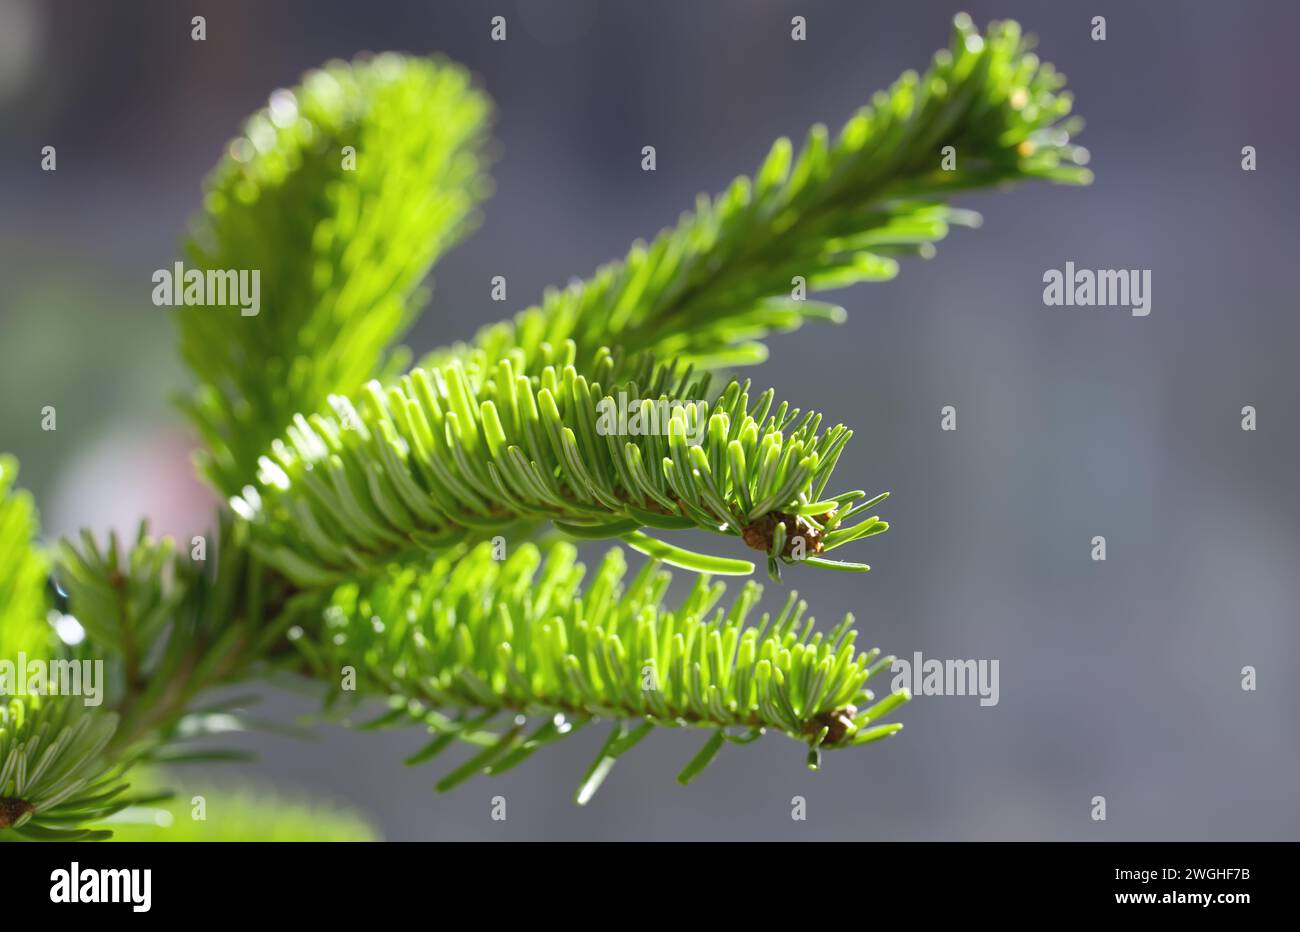 Nordmann fir or Abies nordmanniana branch, shallow depth of field Stock Photo